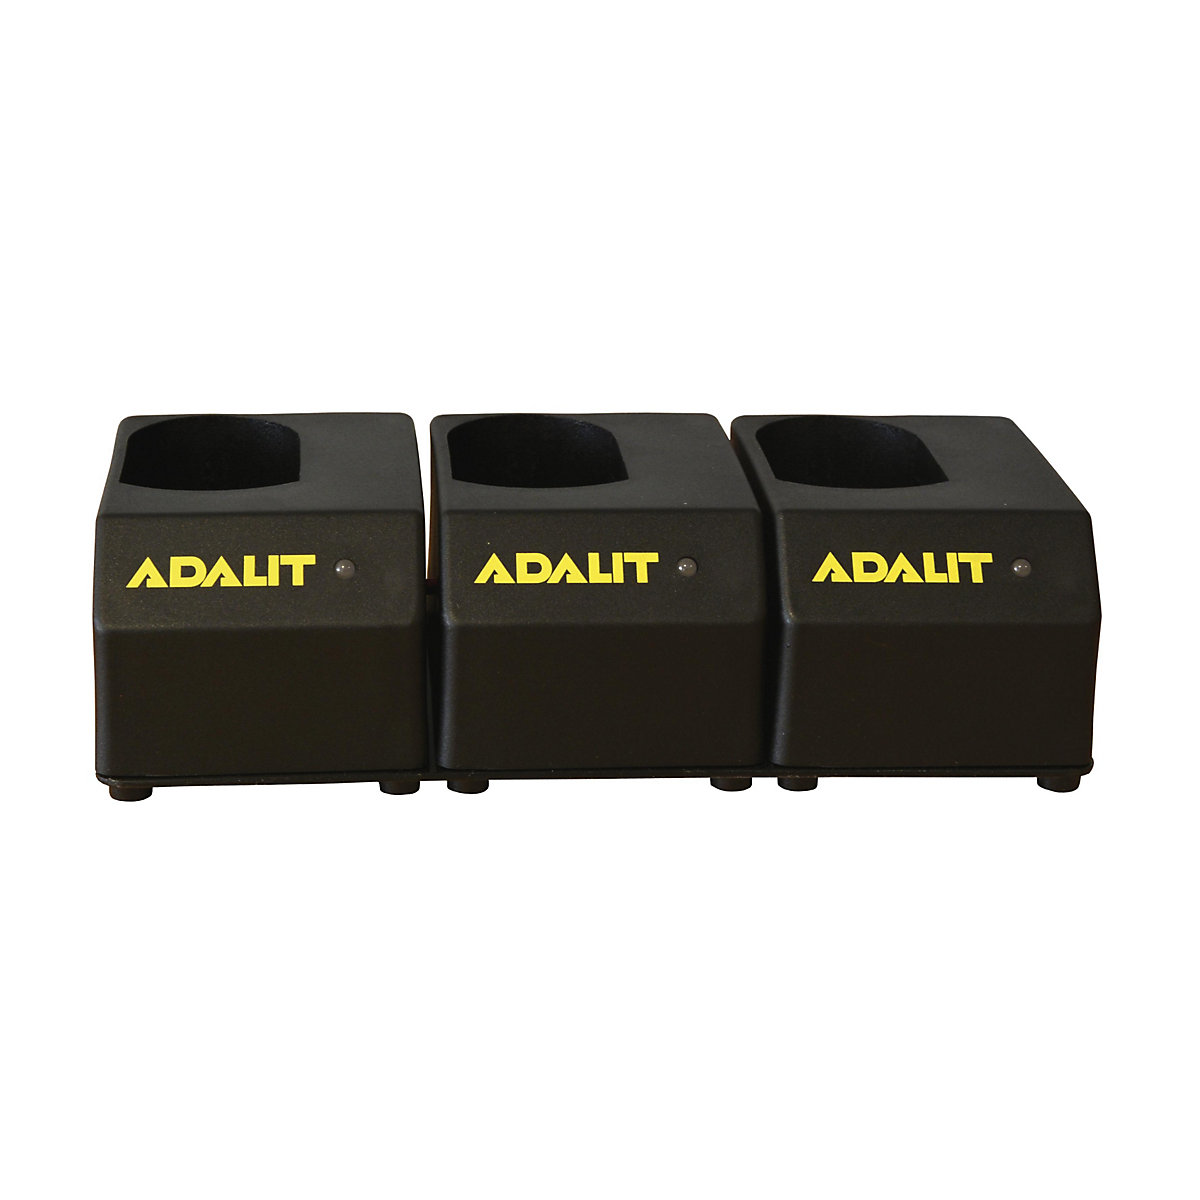 Caricabatteria per lampade portatili ADALIT®, per accumulatore agli ioni di litio, per 3 lampade di sicurezza a LED-8